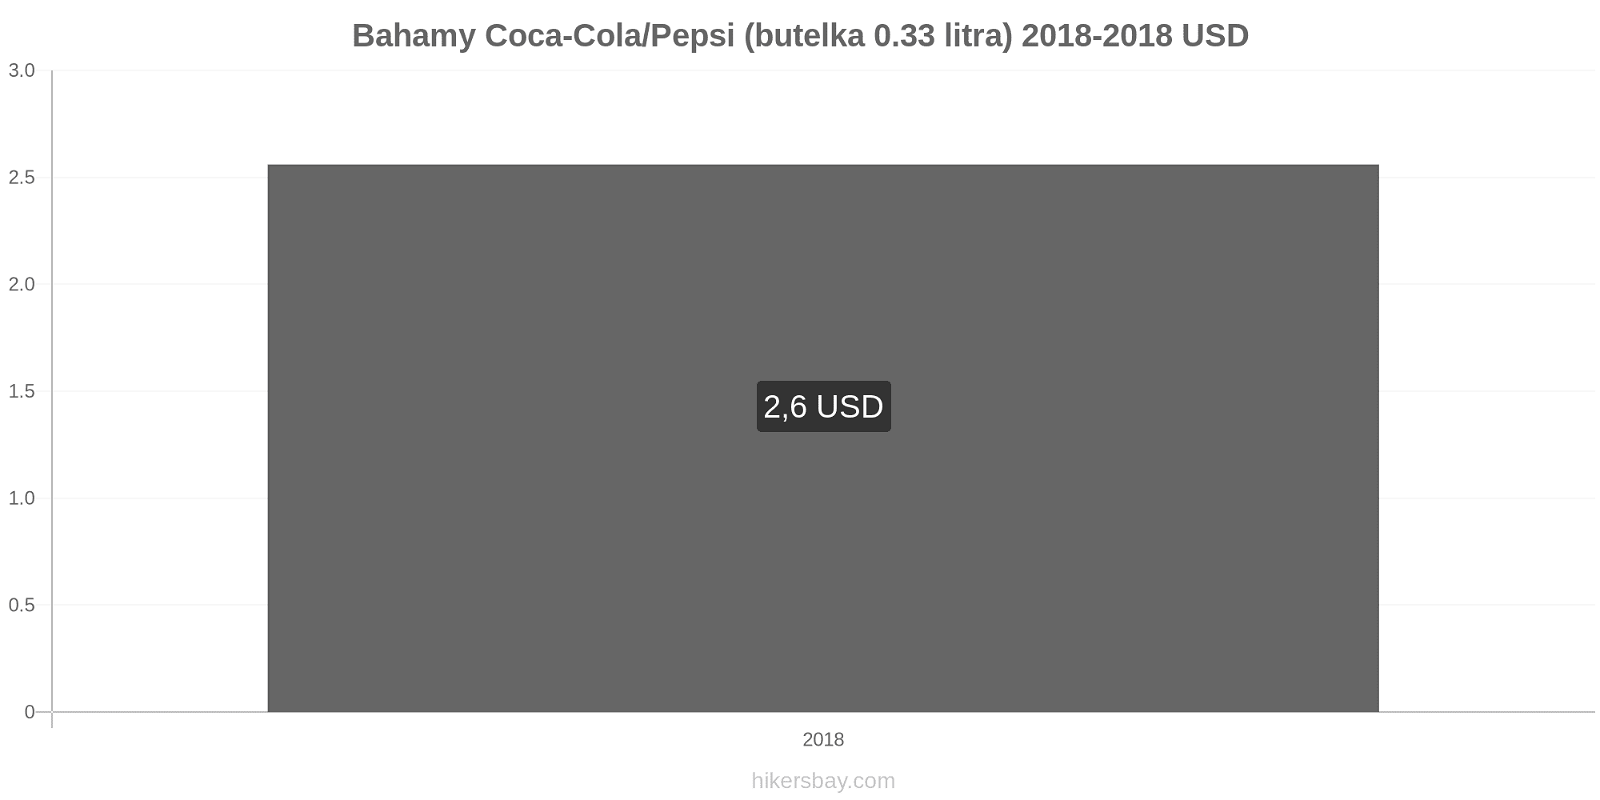 Bahamy zmiany cen Coca-Cola/Pepsi (butelka 0.33 litra) hikersbay.com